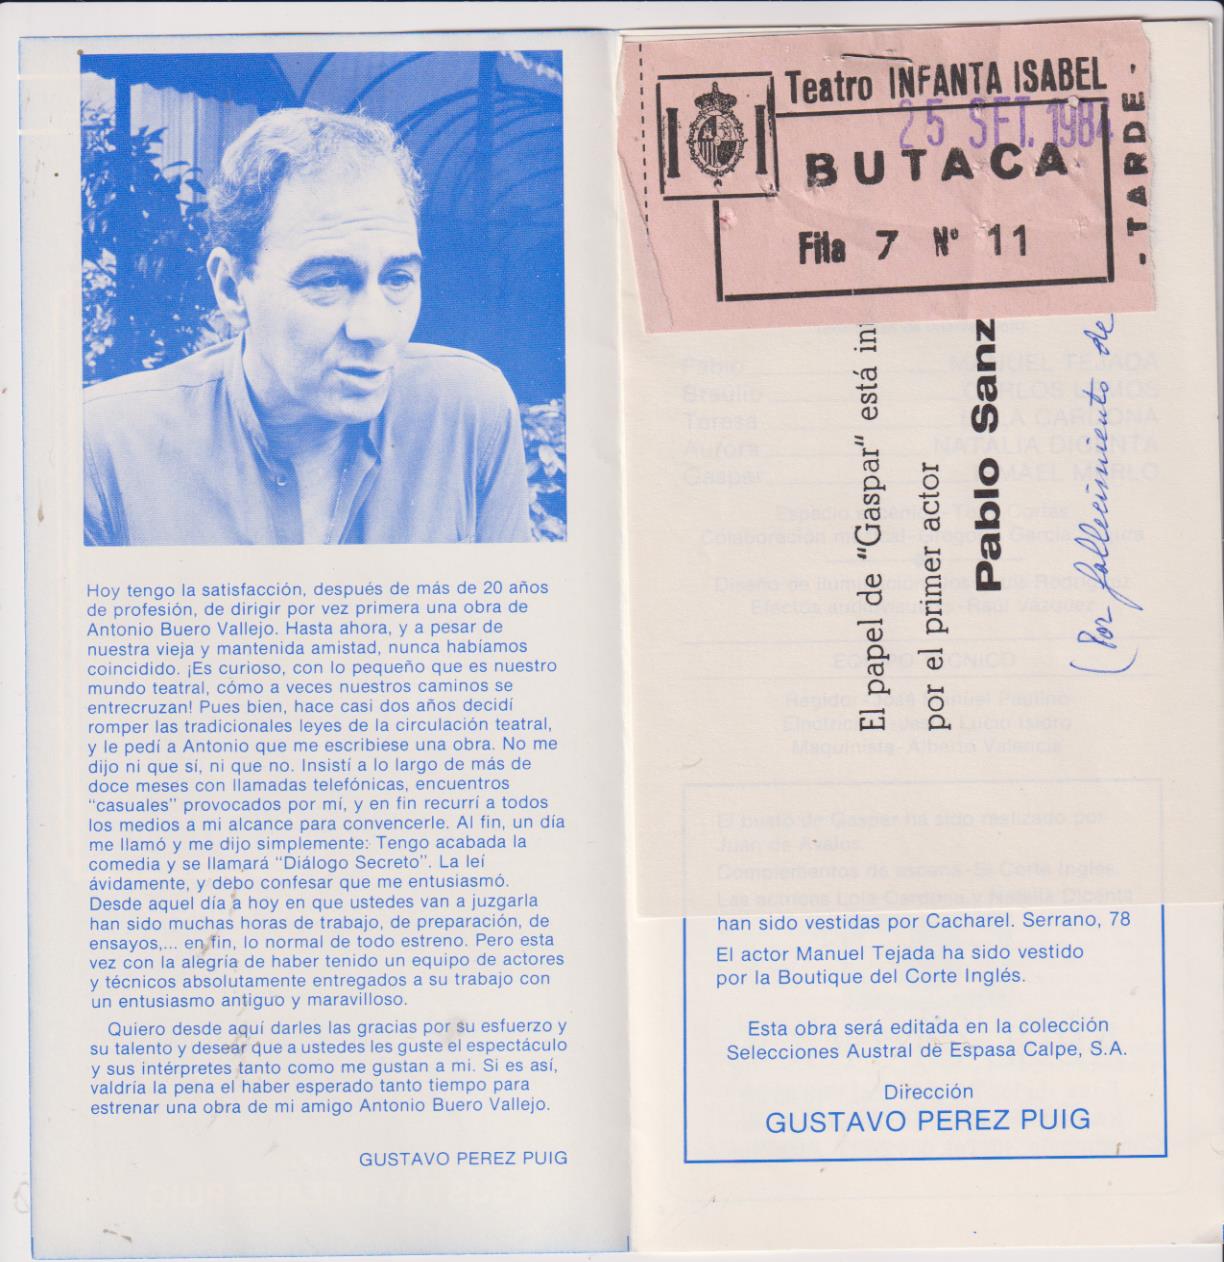 Teatro Infanta Isabel. Dialogo secreto de Antonio Buero Vallejo. Tríptico con la entrada de 25 Set. 1984